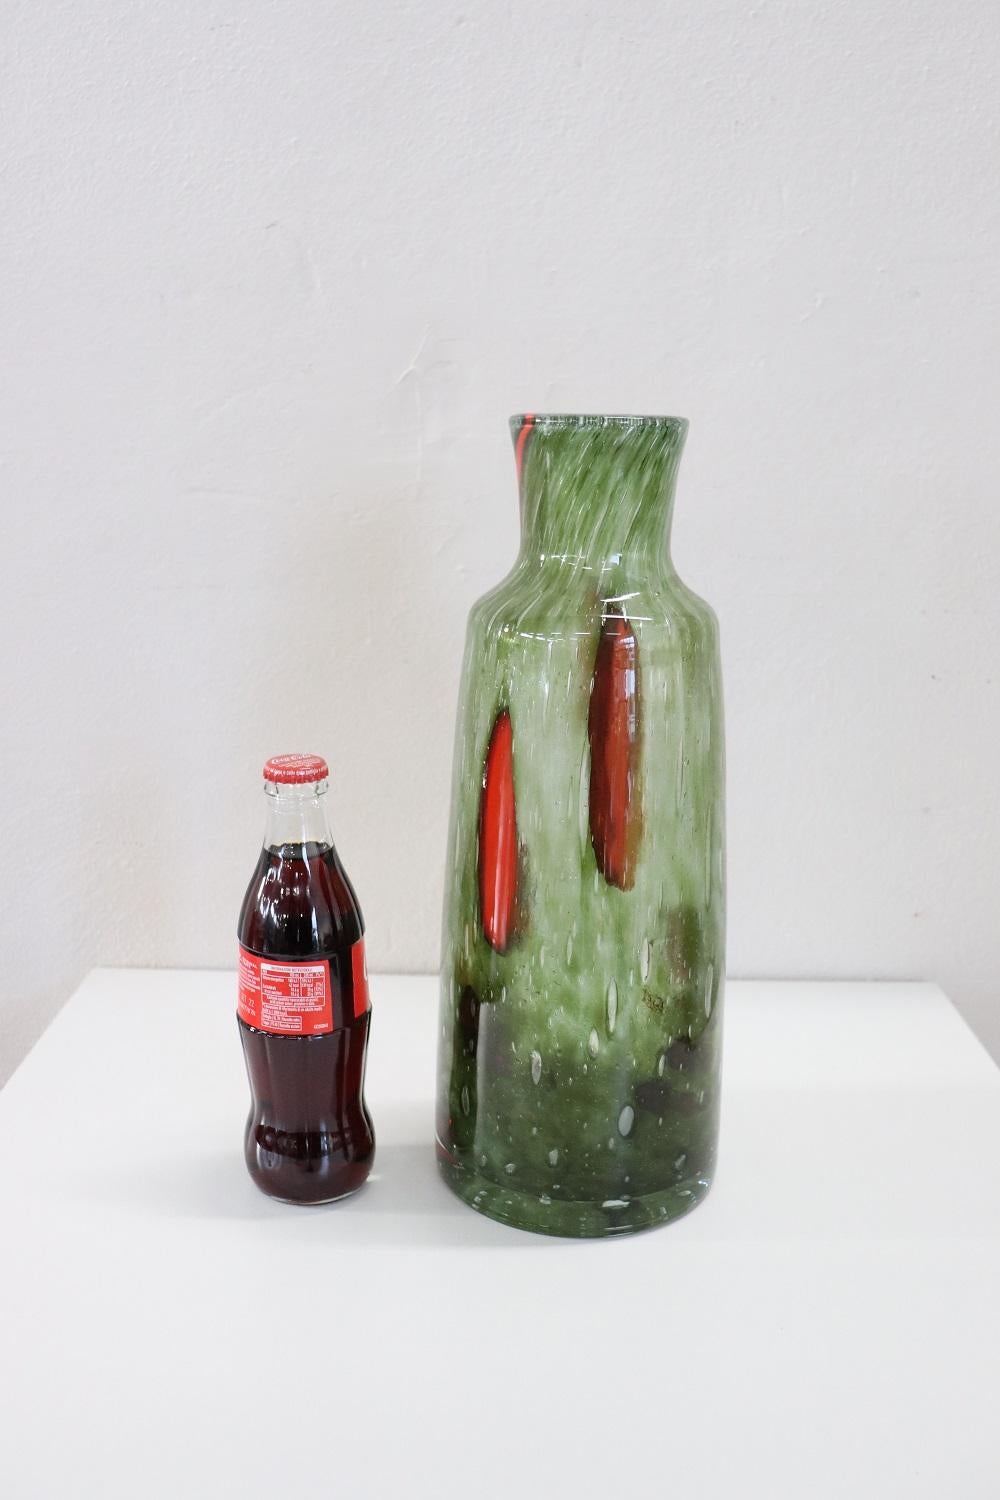 Vase en verre artistique raffiné, Italie, production années 1960 Murano. Non signé. Verre soufflé à la main de haute qualité artistique dans des tons de vert avec des décorations rouges. Des conditions parfaites !